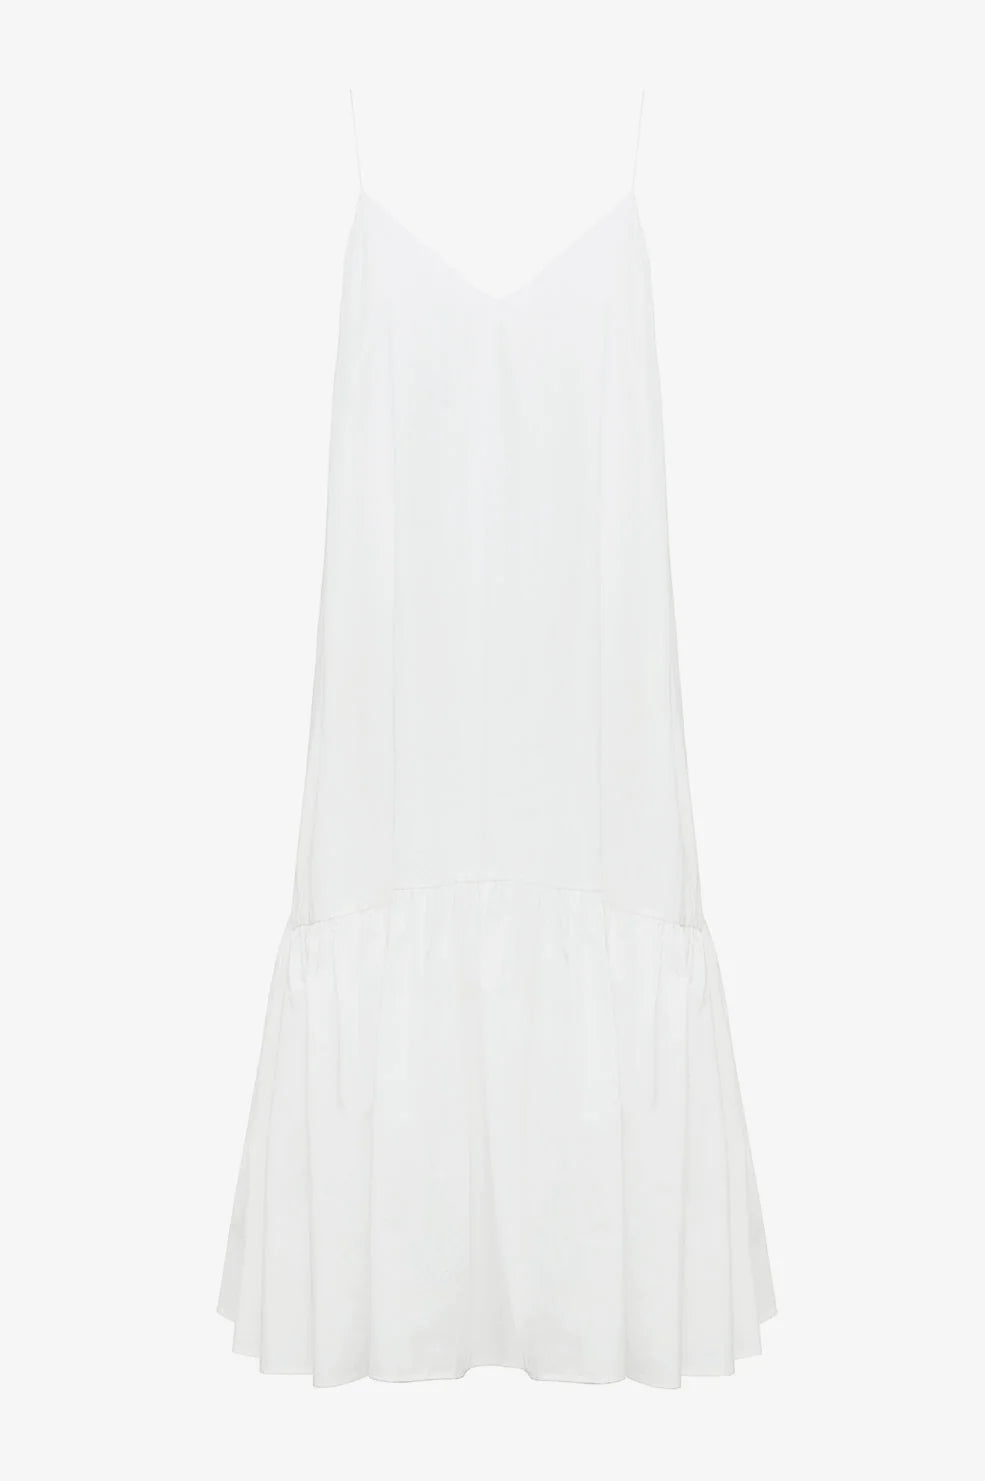 Averie Dress in White